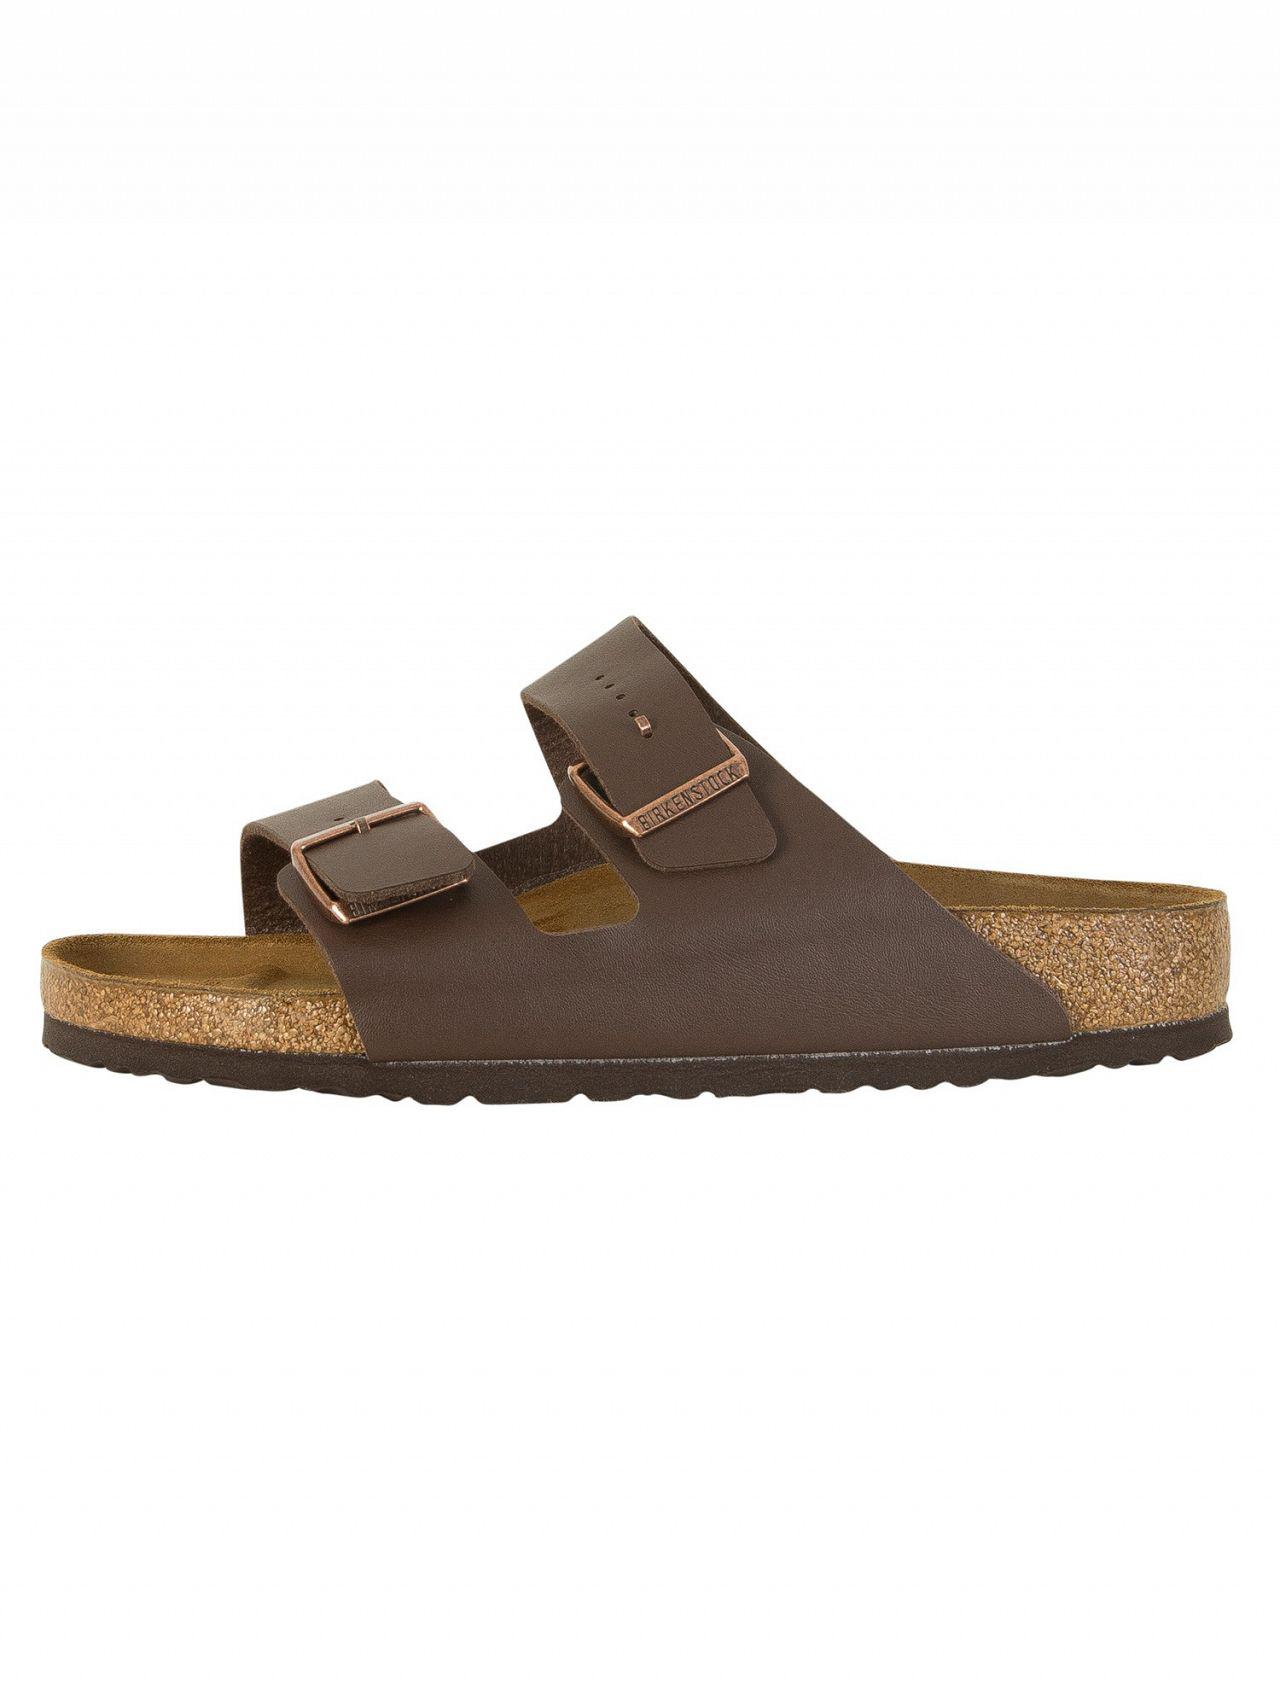 Birkenstock Dark Brown Arizona Bs Sandals for Men | Lyst